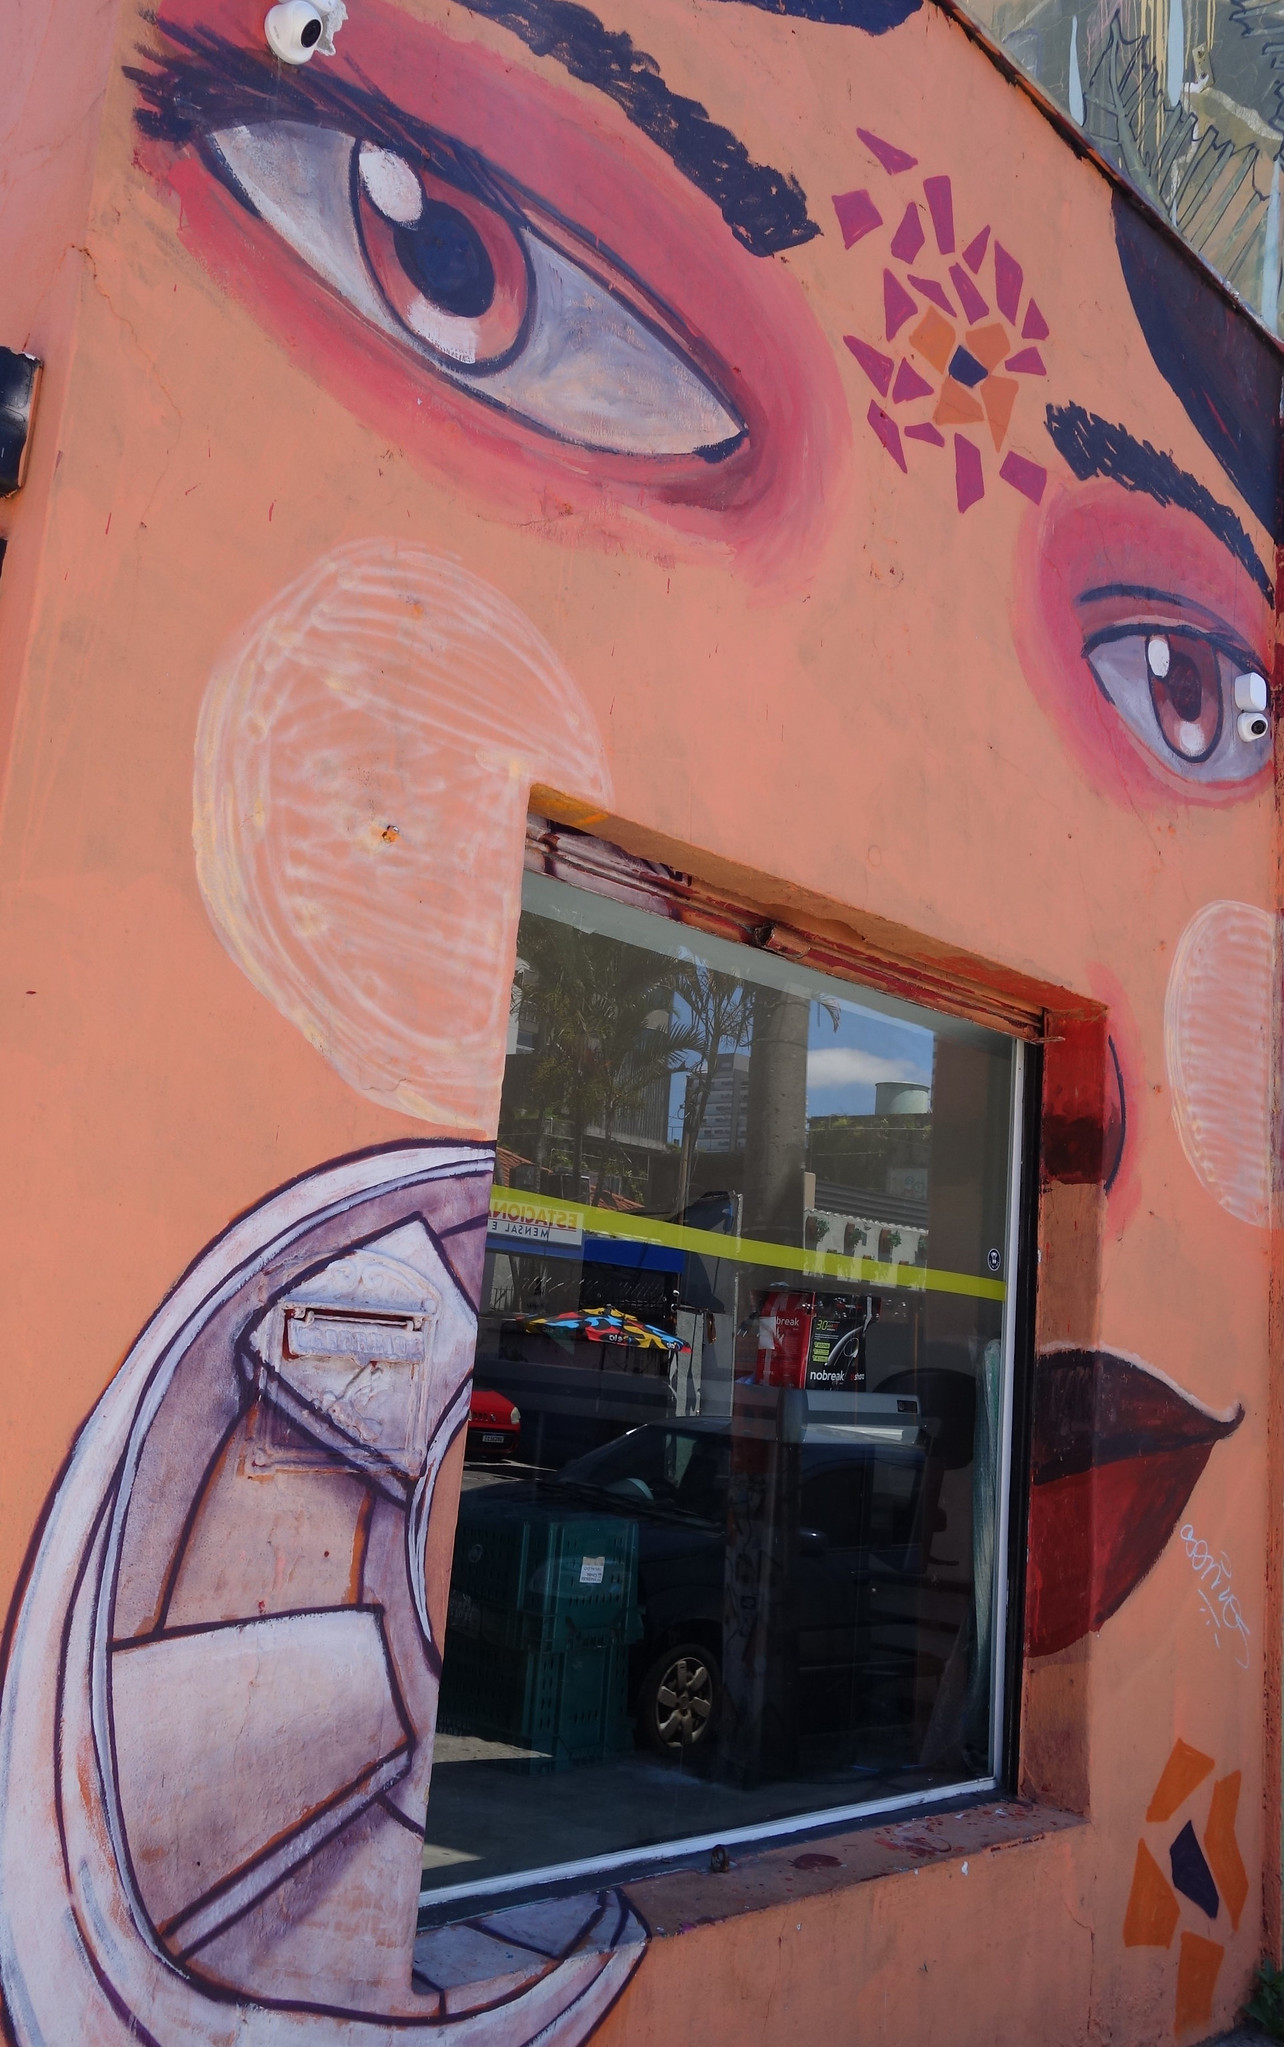 Arte de rua em Sampa; São Paulo tem street art/Foto: J Goncalves